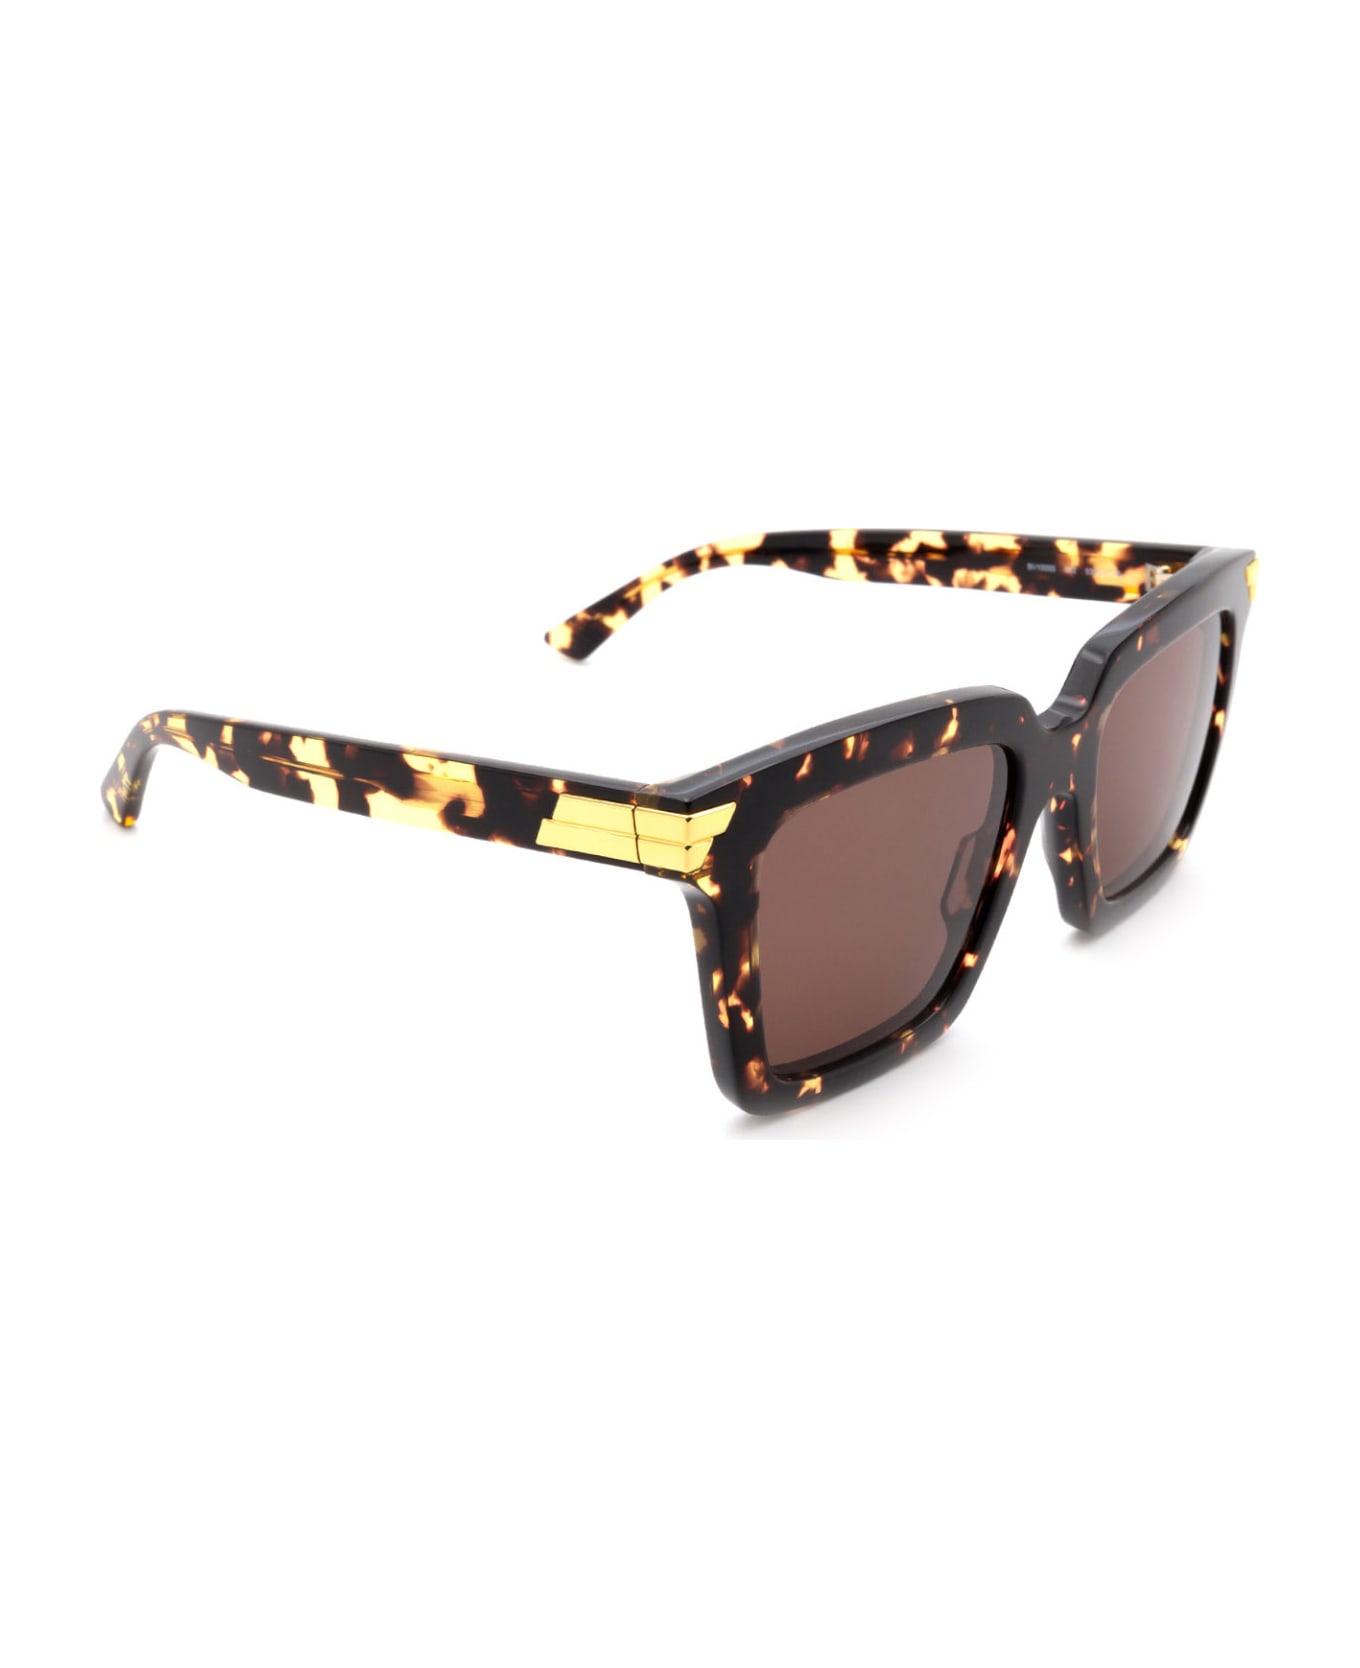 Bottega Veneta Eyewear Bv1005s Havana Sunglasses - Havana